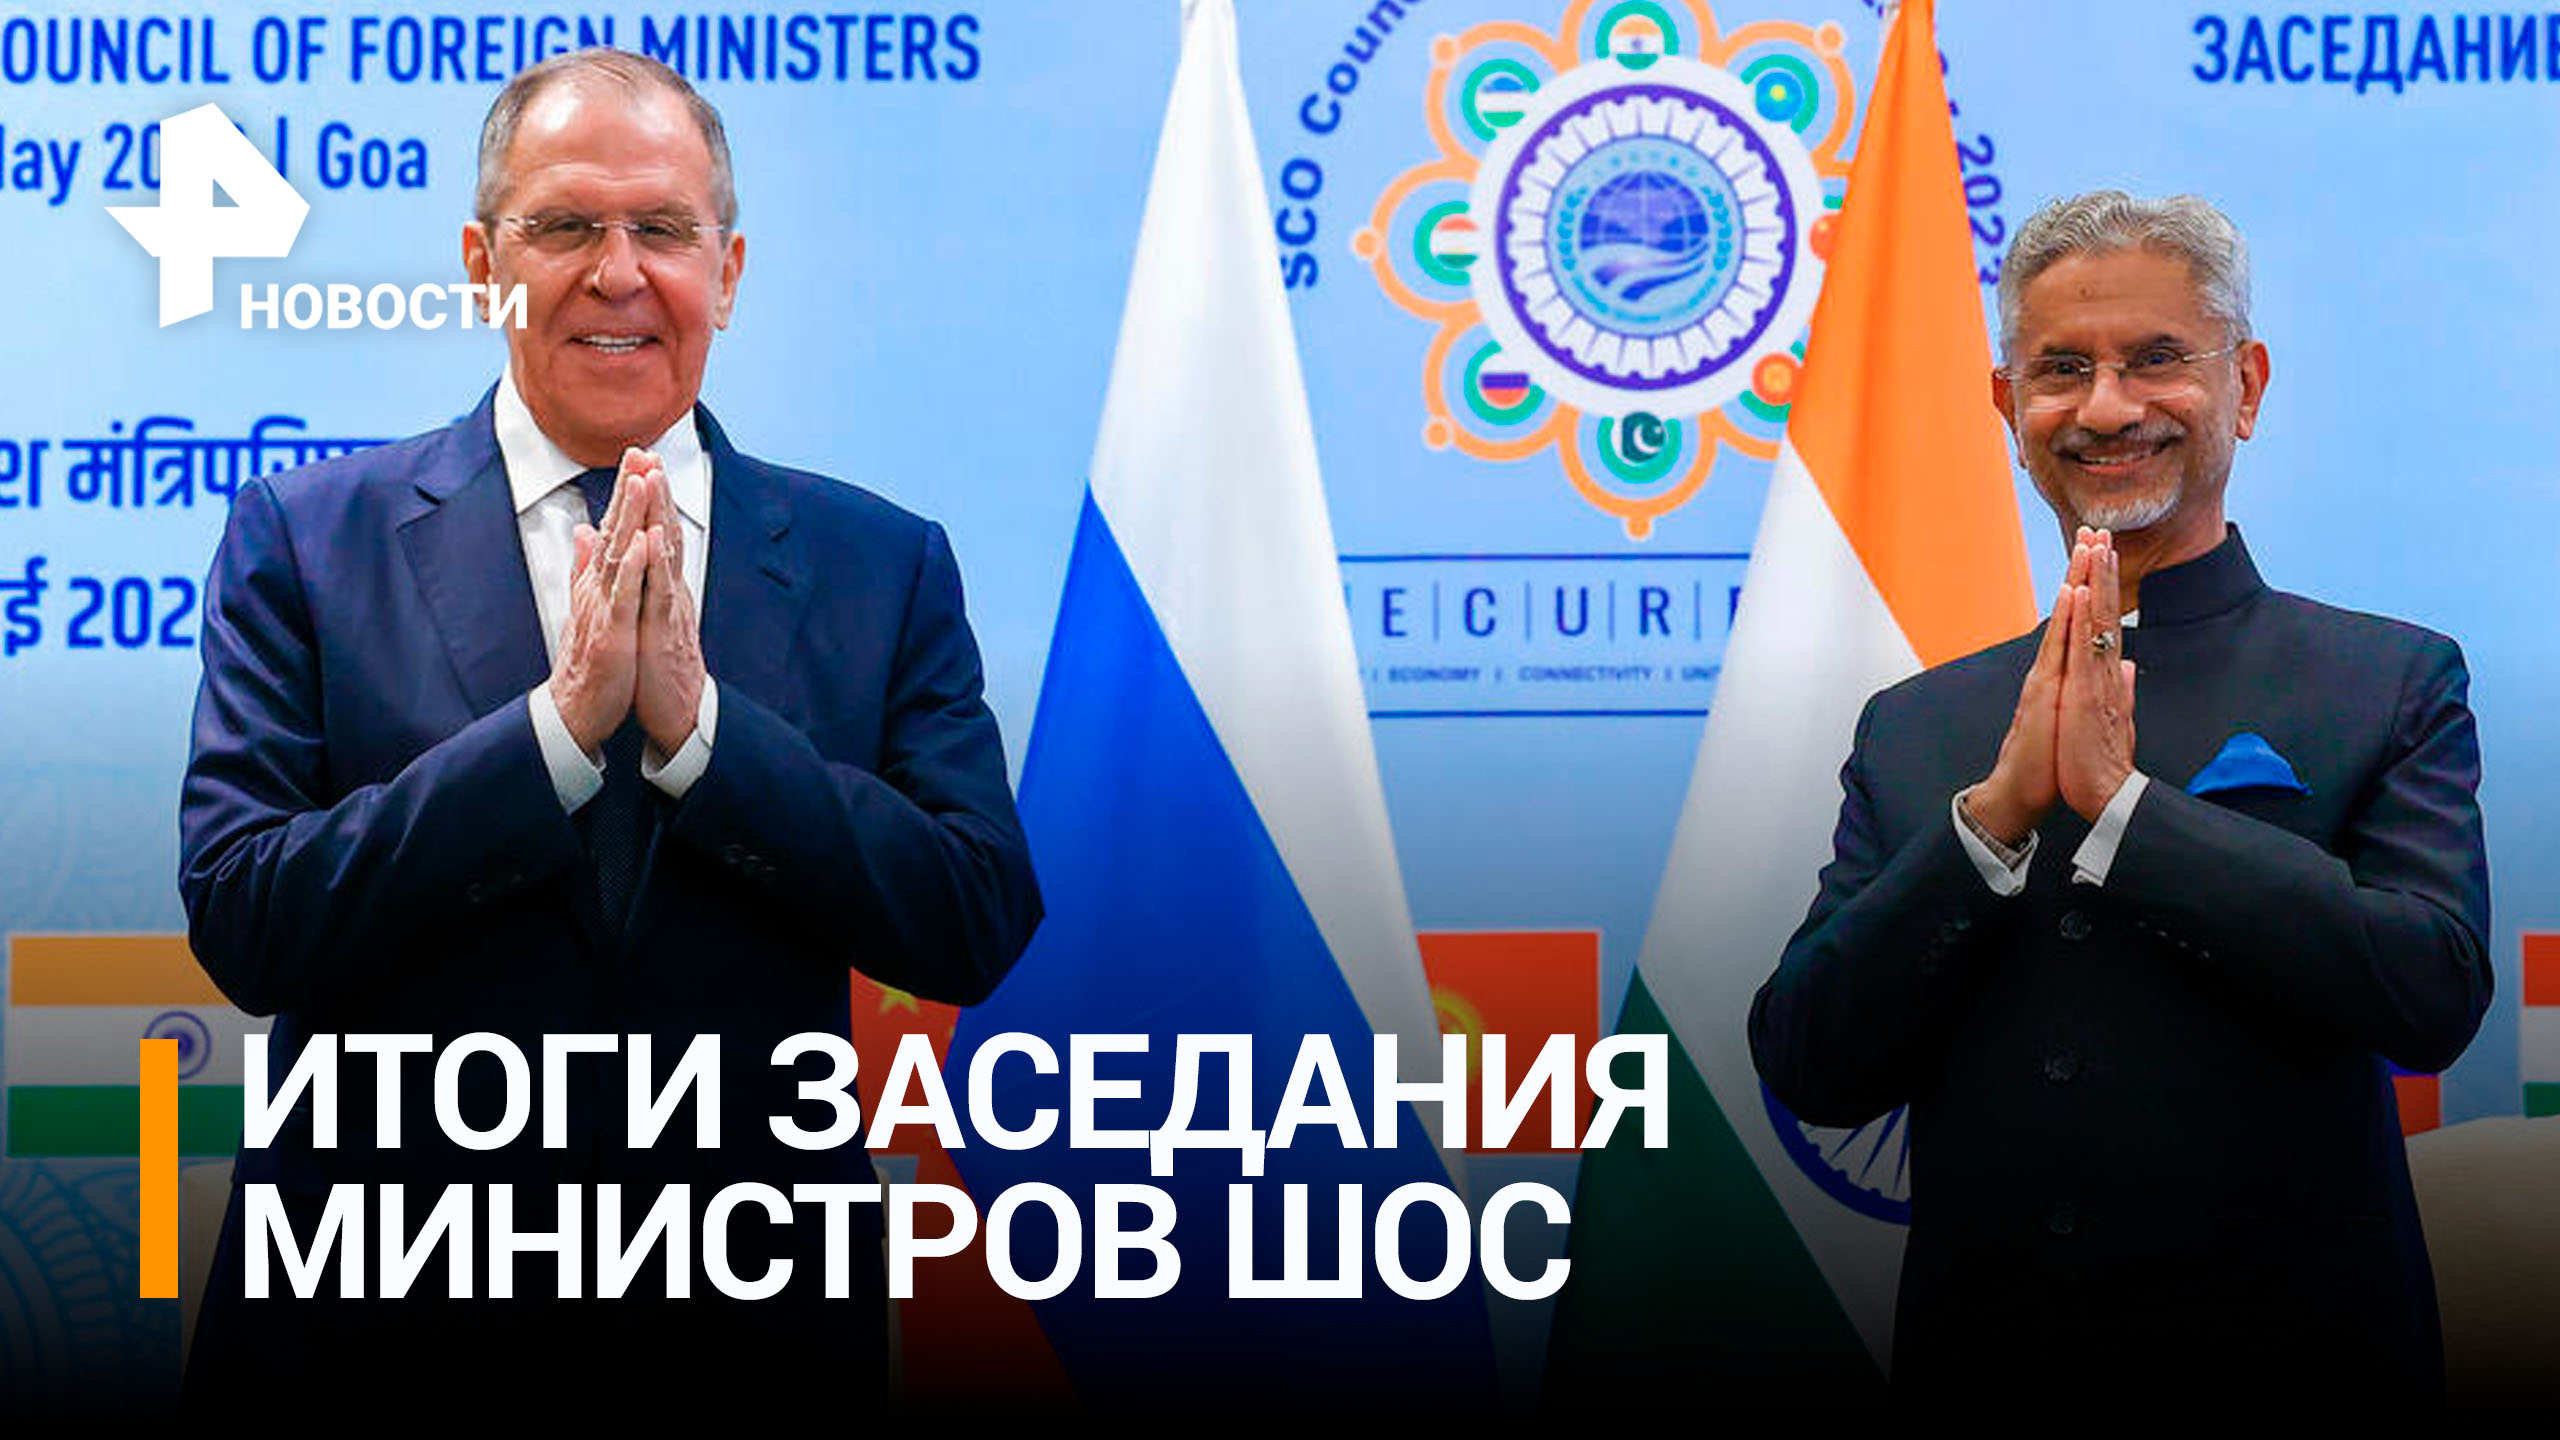 Страны ШОС договорились о взаимной борьбе с терроризмом / РЕН Новости